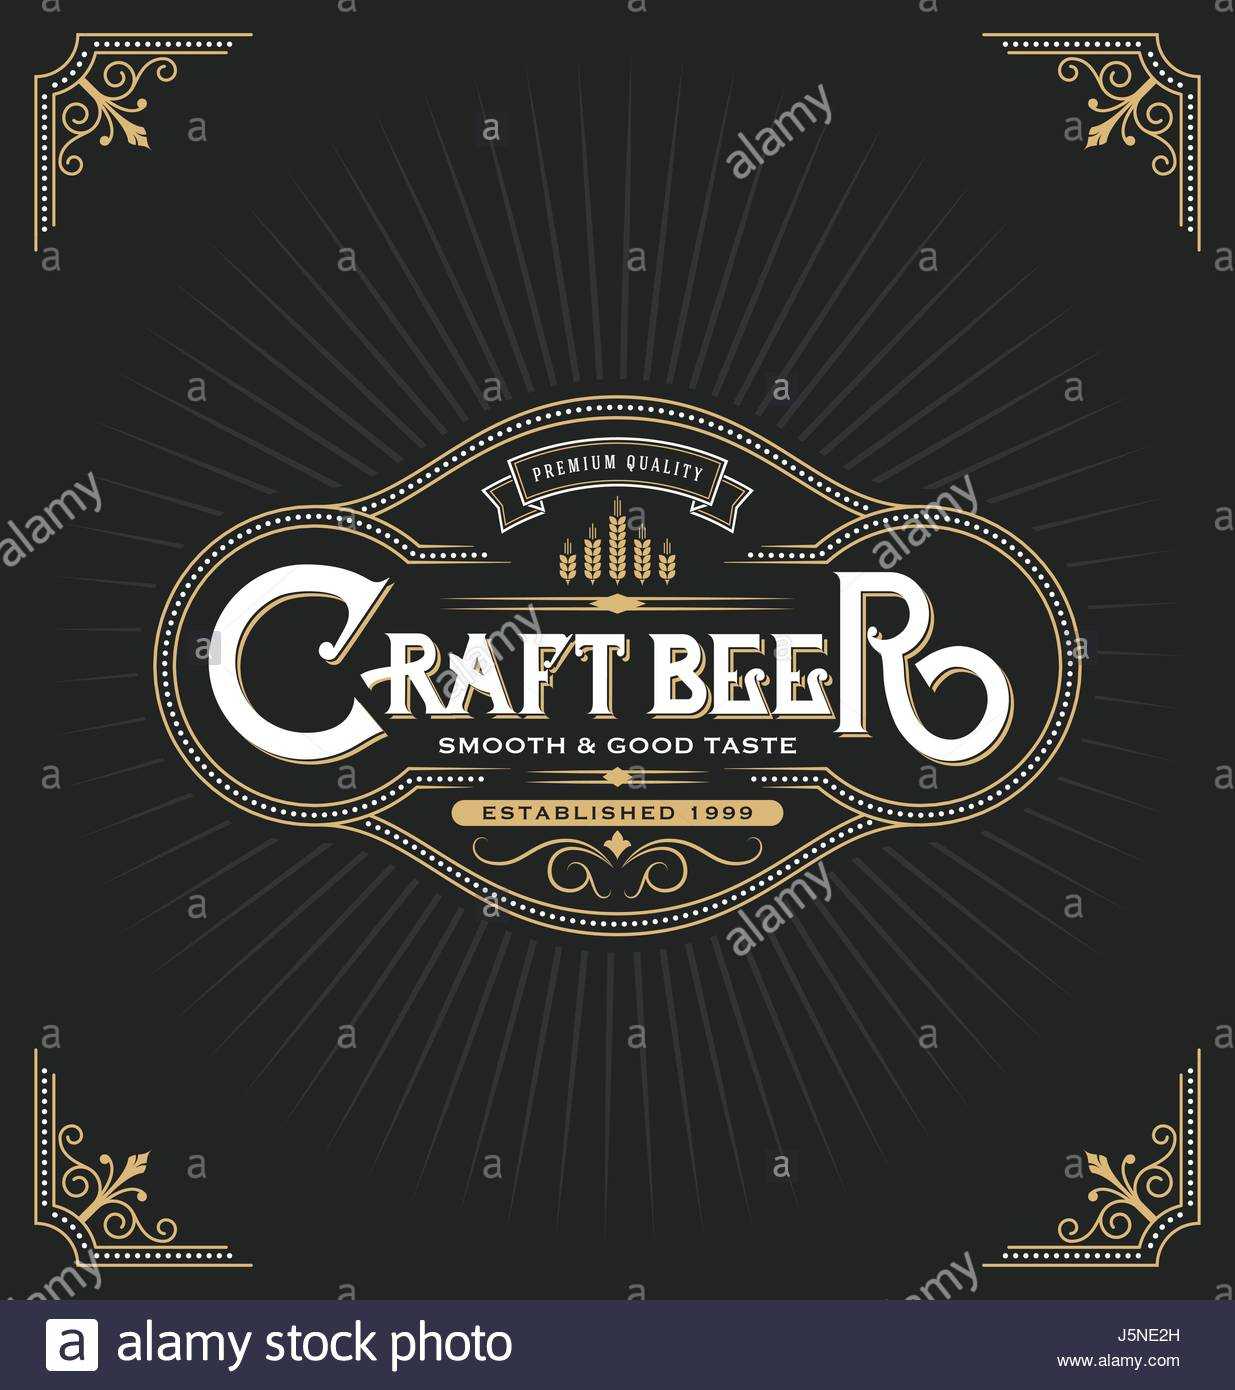 Craft Beer Sticker Label Design. Vintage Frame Template With Craft Label Templates